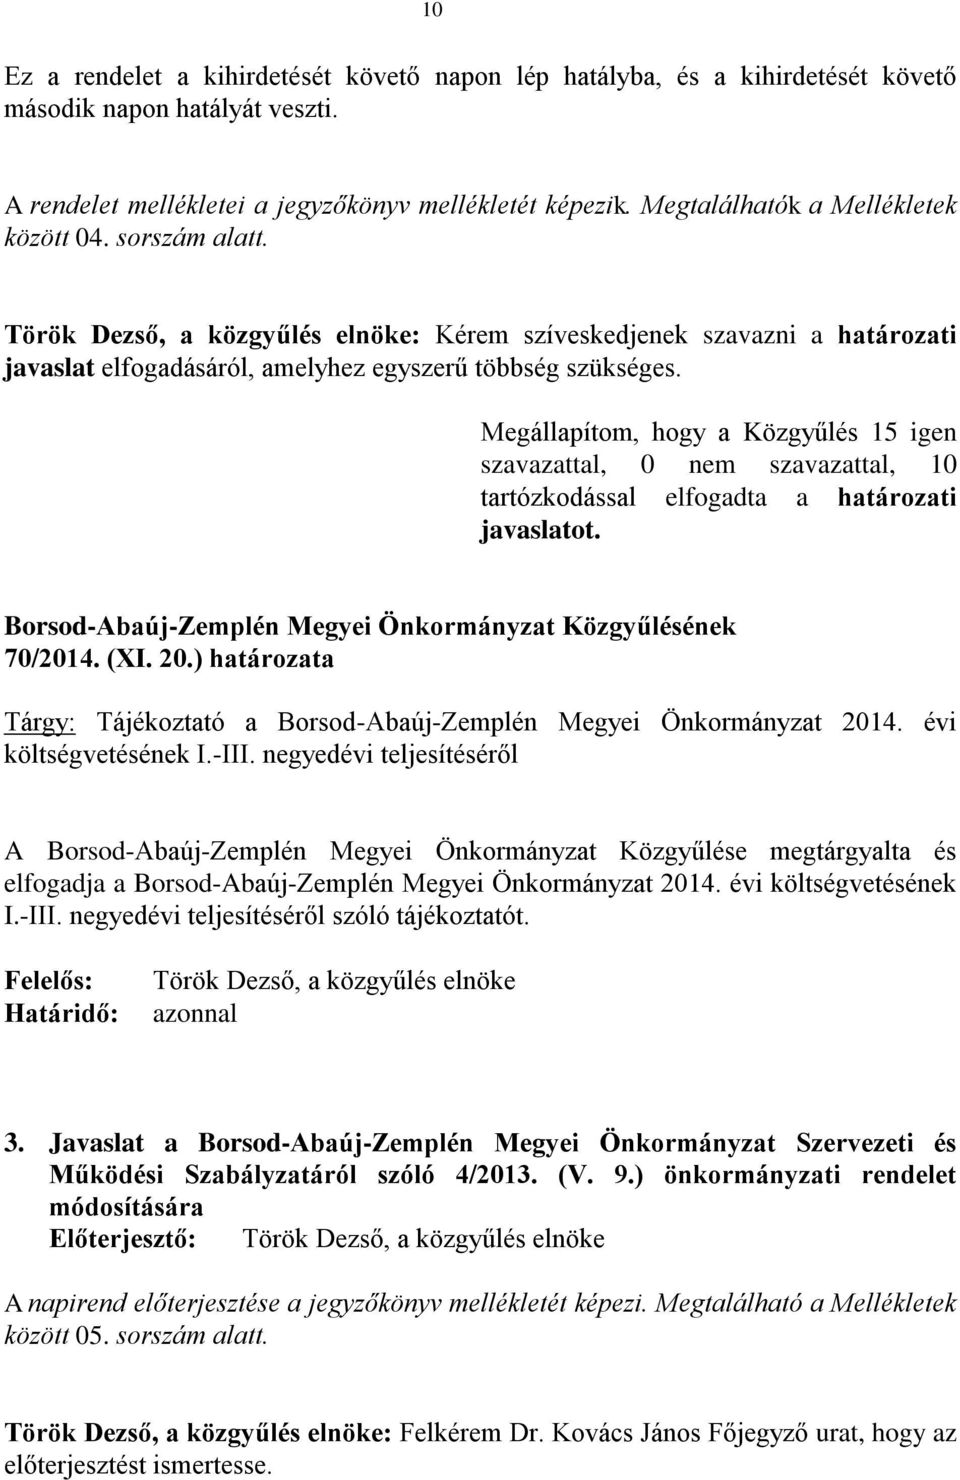 Megállapítom, hogy a Közgyűlés 15 igen szavazattal, 0 nem szavazattal, 10 tartózkodással elfogadta a határozati javaslatot. Borsod-Abaúj-Zemplén Megyei Önkormányzat Közgyűlésének 70/2014. (XI. 20.